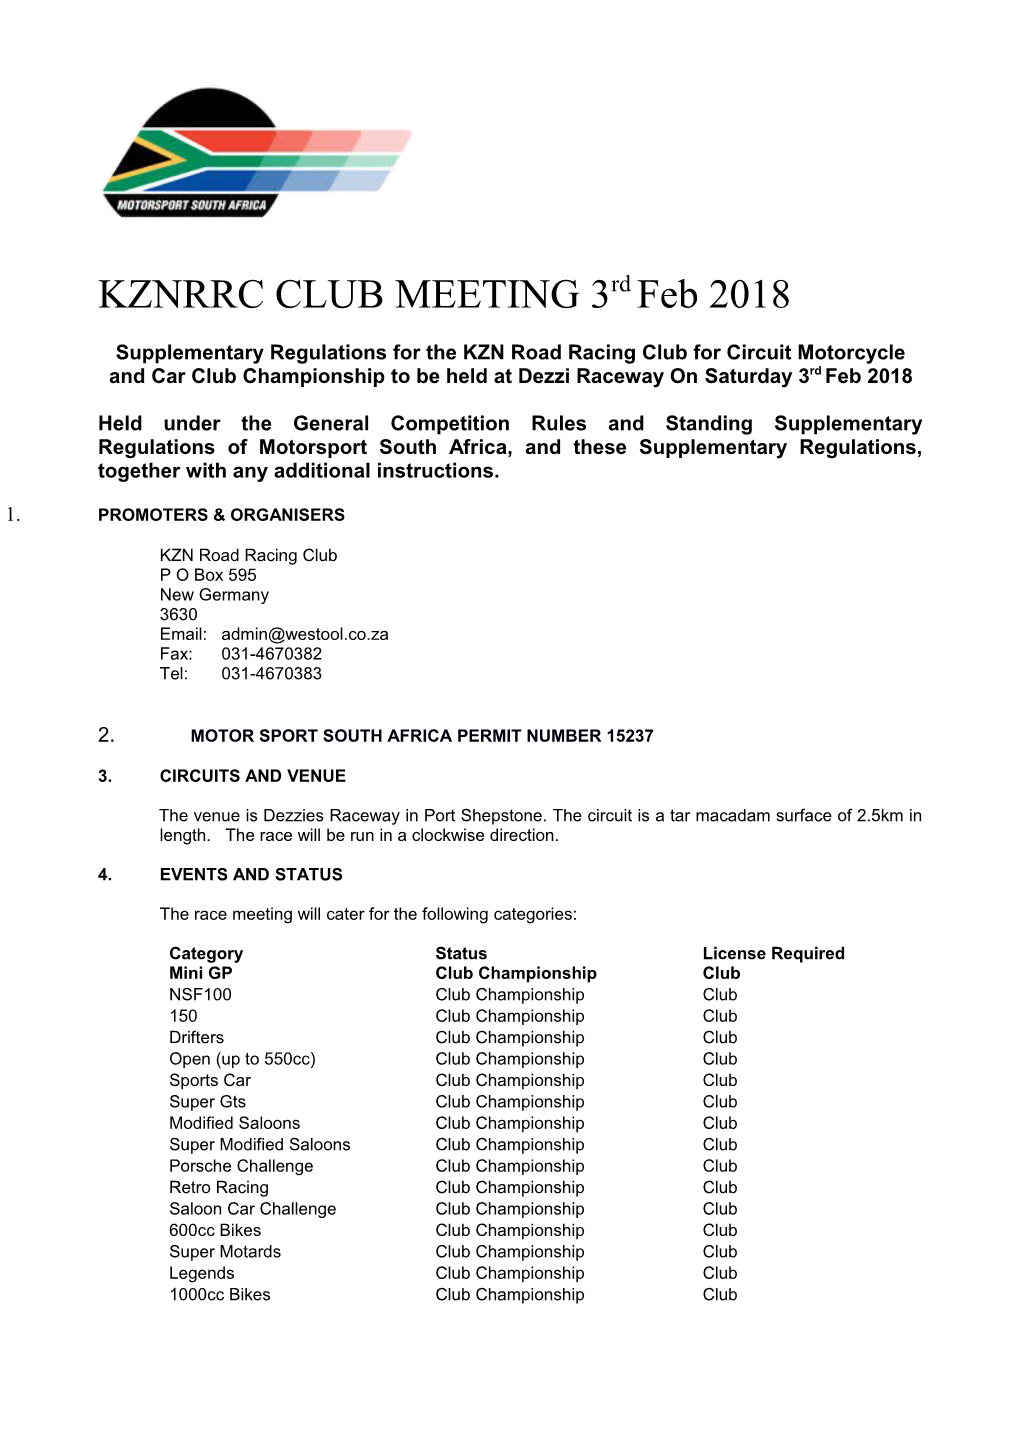 KZNRRC CLUB MEETING 3Rdfeb2018